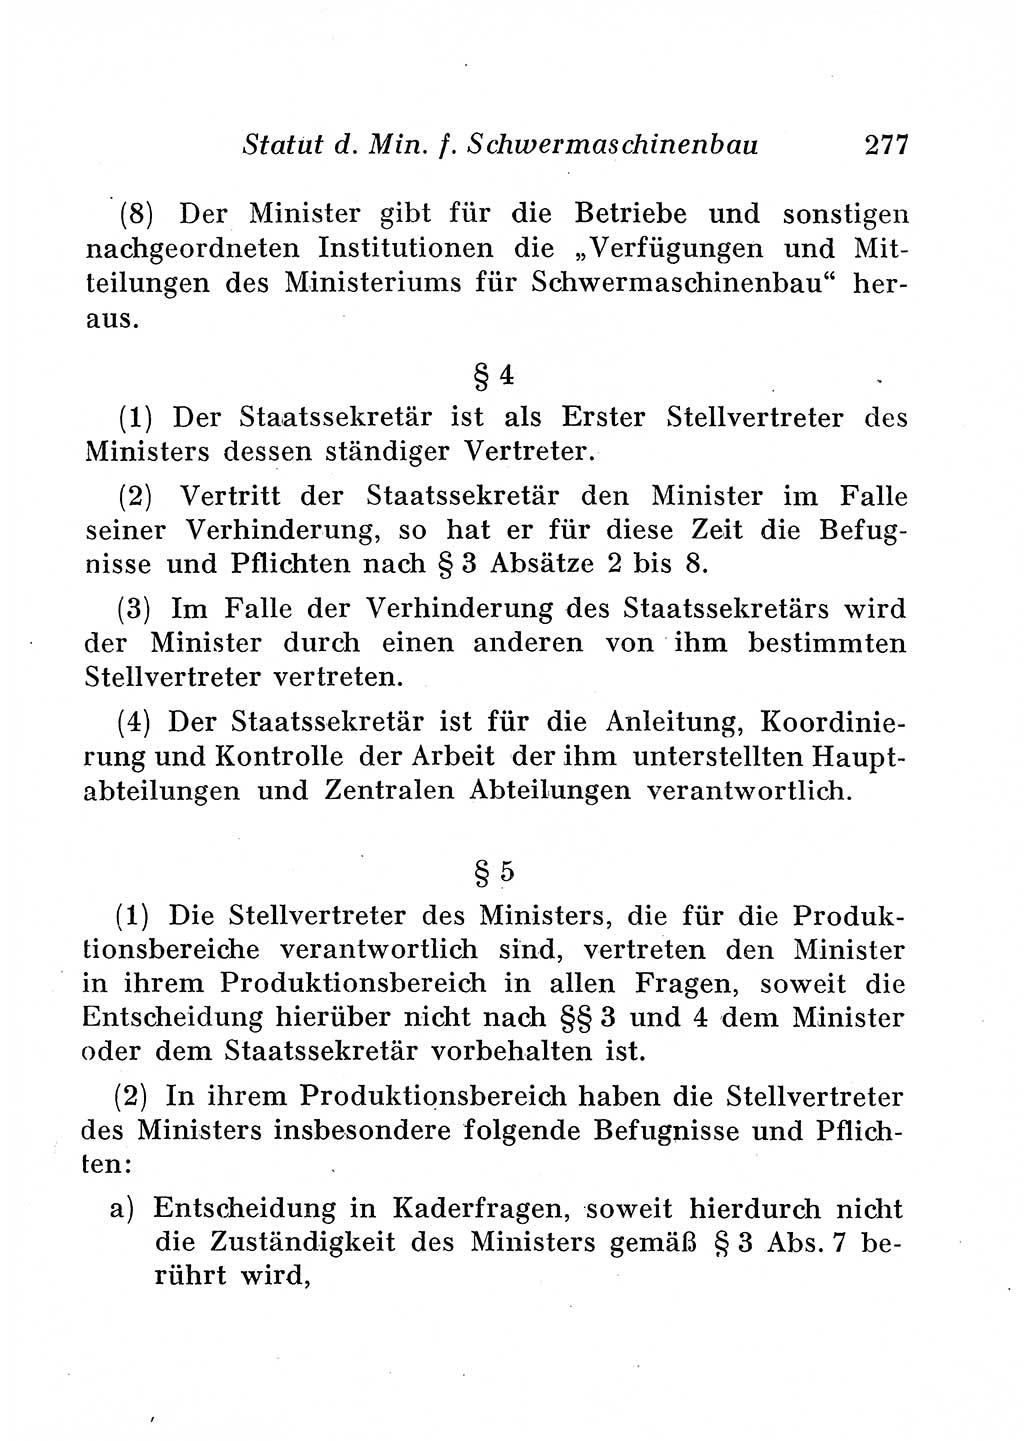 Staats- und verwaltungsrechtliche Gesetze der Deutschen Demokratischen Republik (DDR) 1958, Seite 277 (StVerwR Ges. DDR 1958, S. 277)